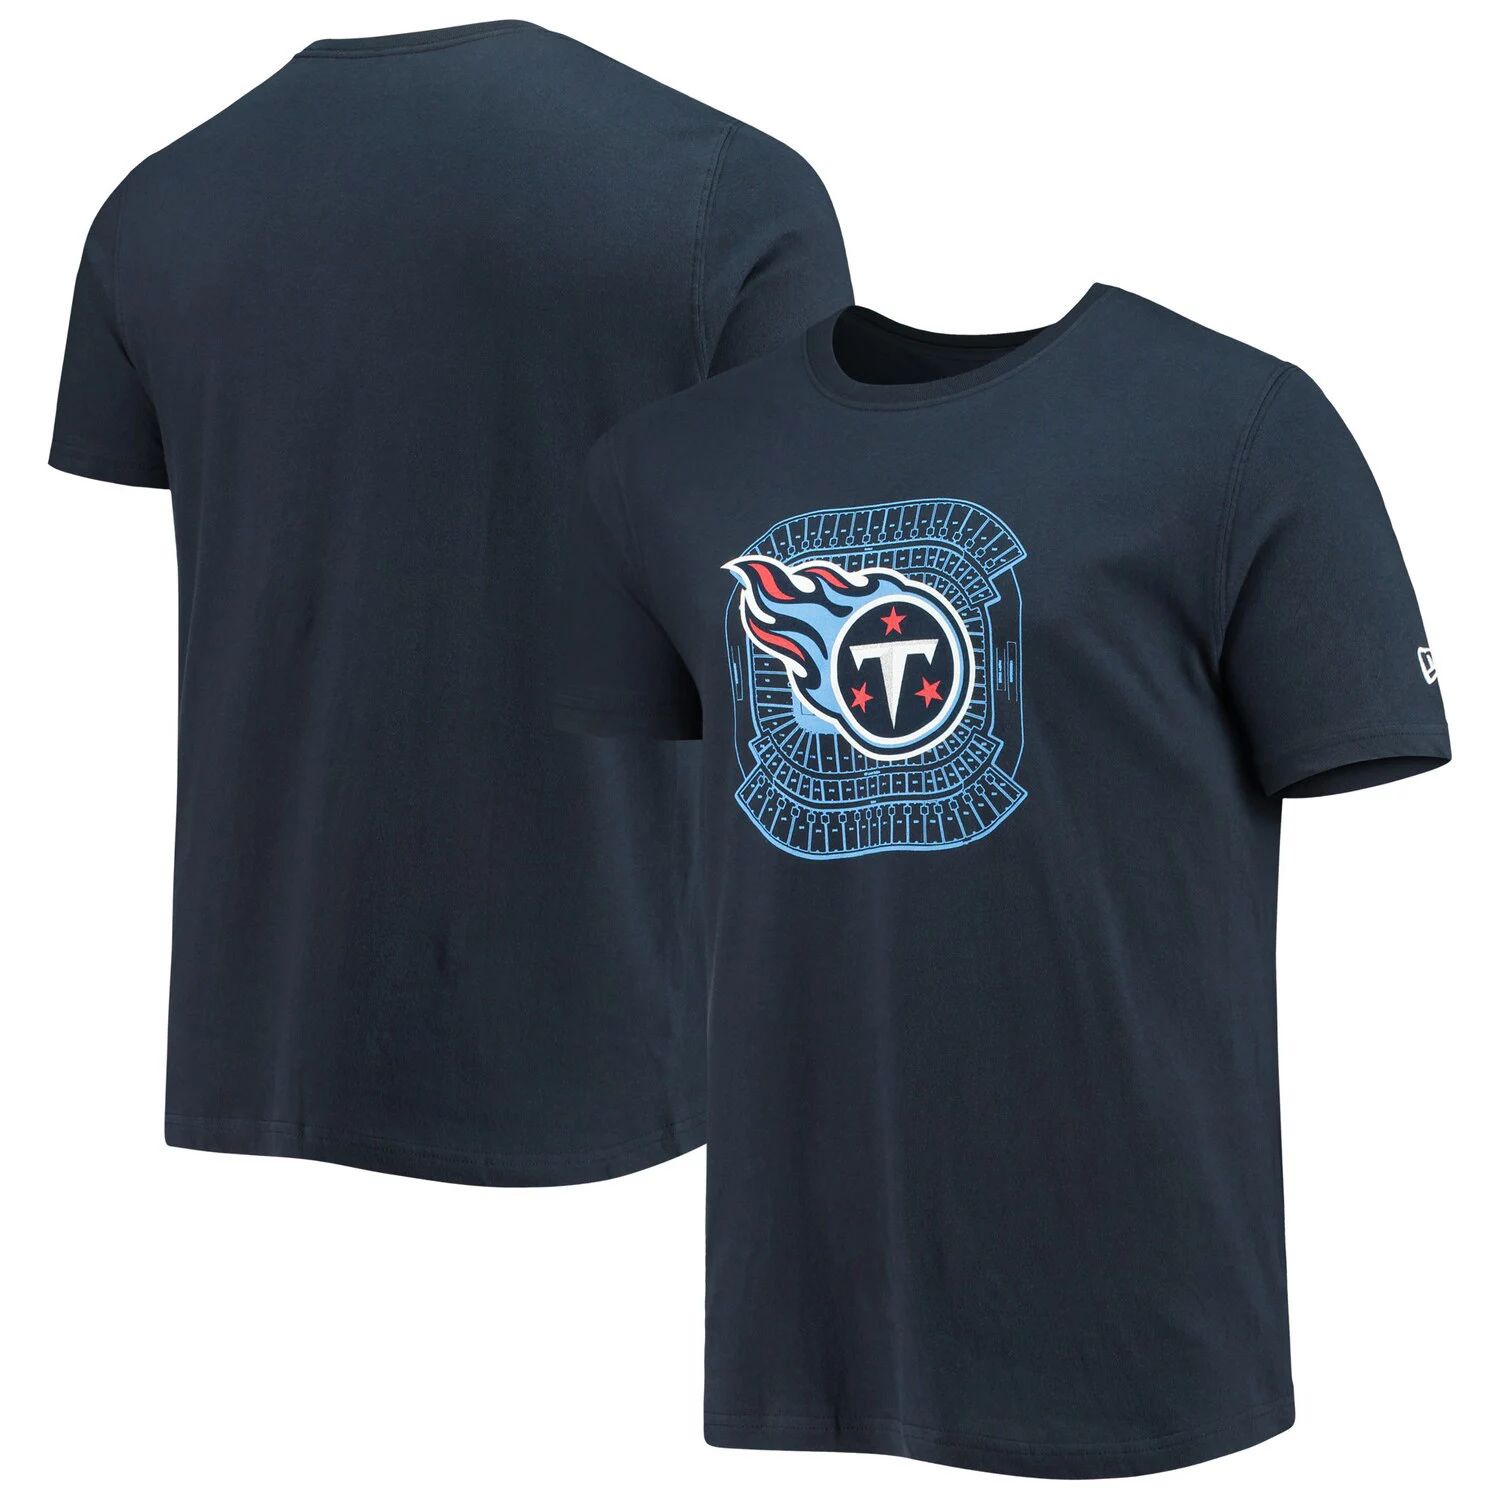 Мужская темно-синяя футболка Tennessee Titans Stadium New Era